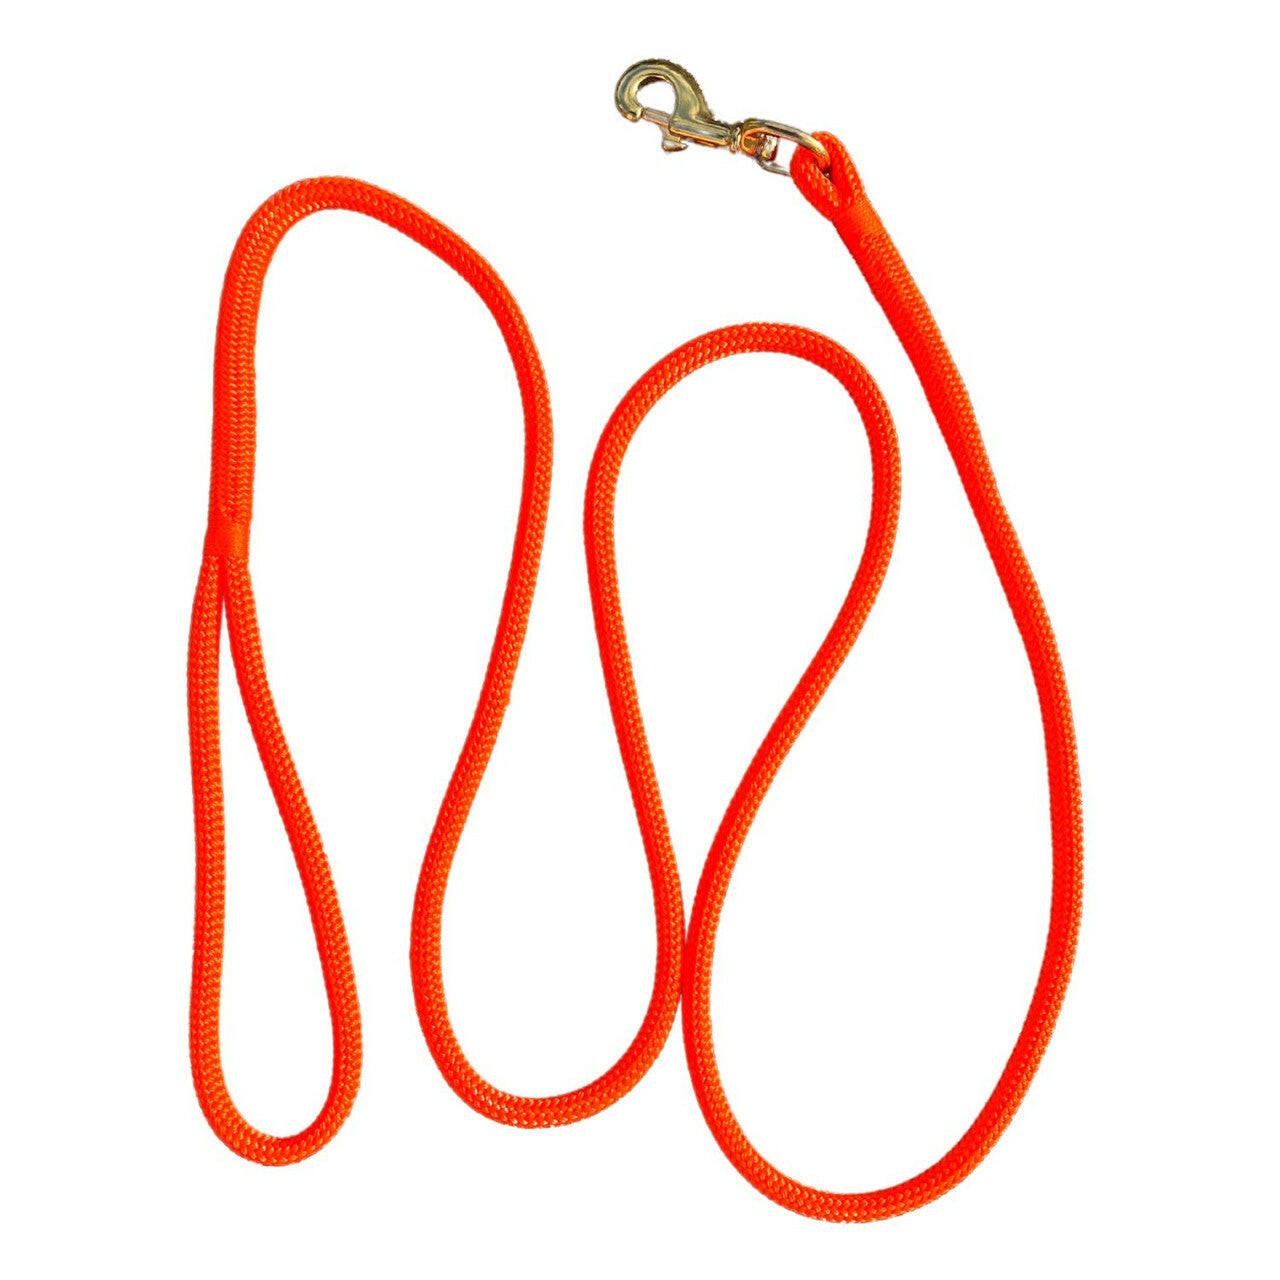 Nautical Rope Dog Leash, Authentic Yacht Braid Pet Leashes New England Trading Co Orange  